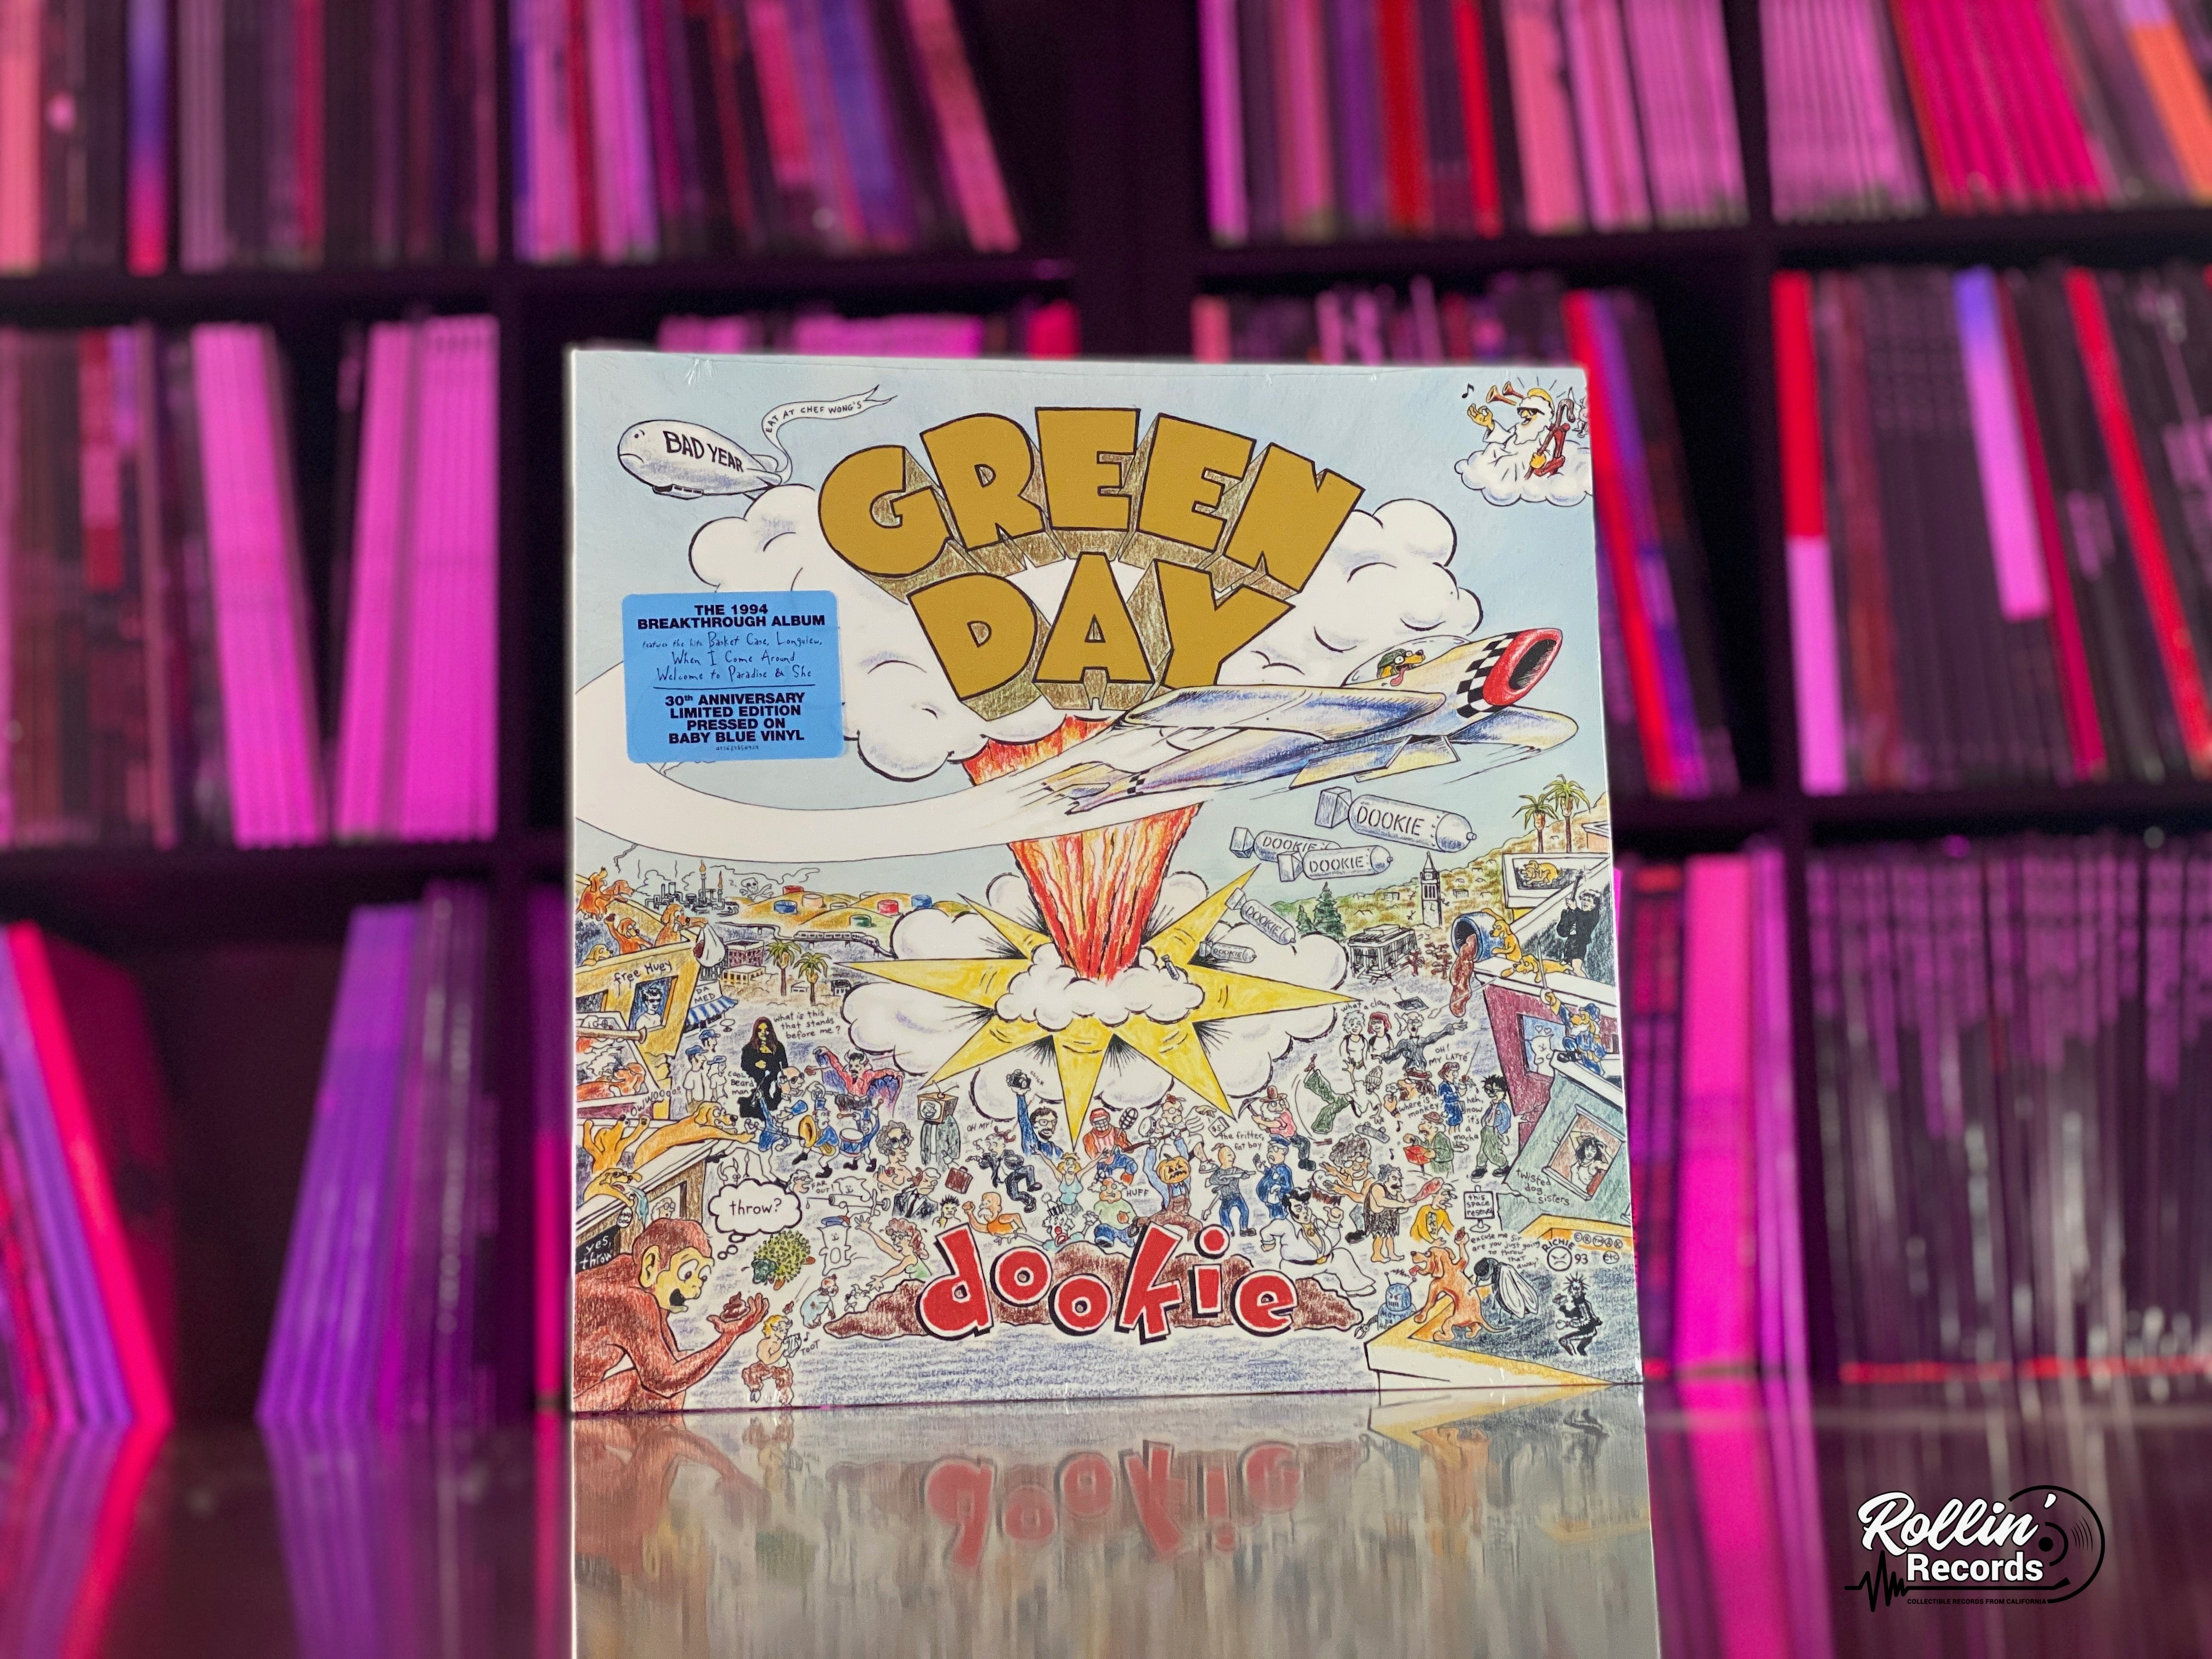 Green Day - Dookie [Vinyl LP]